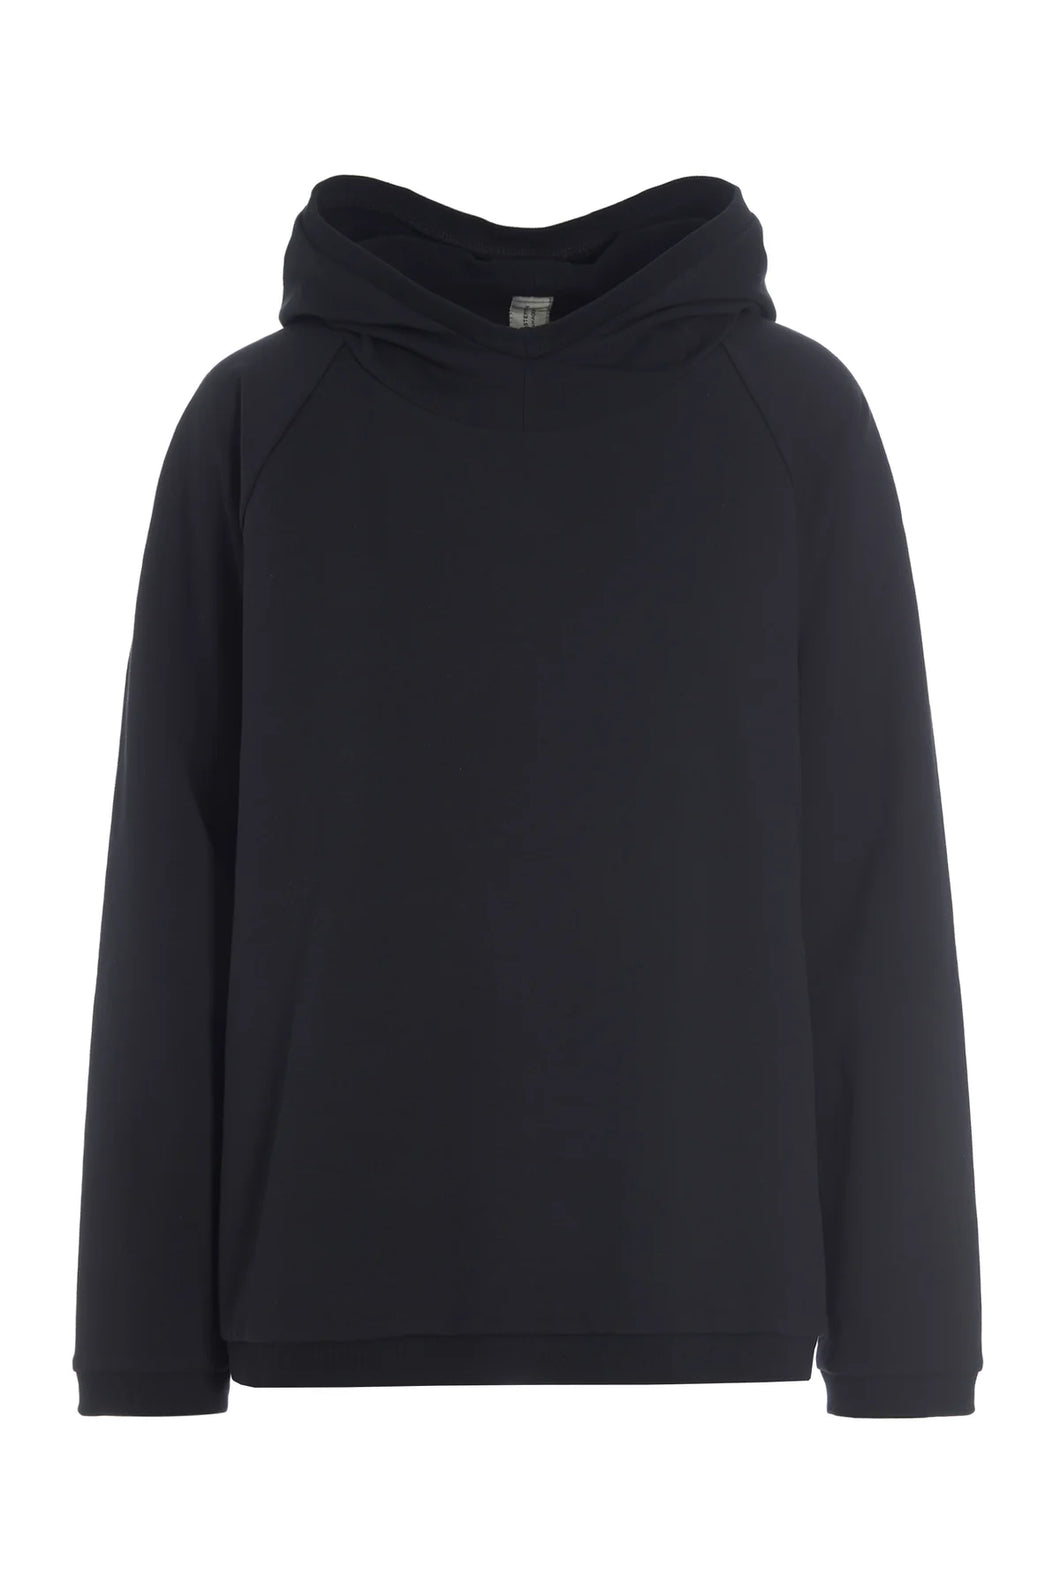 HENRIETTE STEFFENSEN Hooded Sweatshirt (71604)